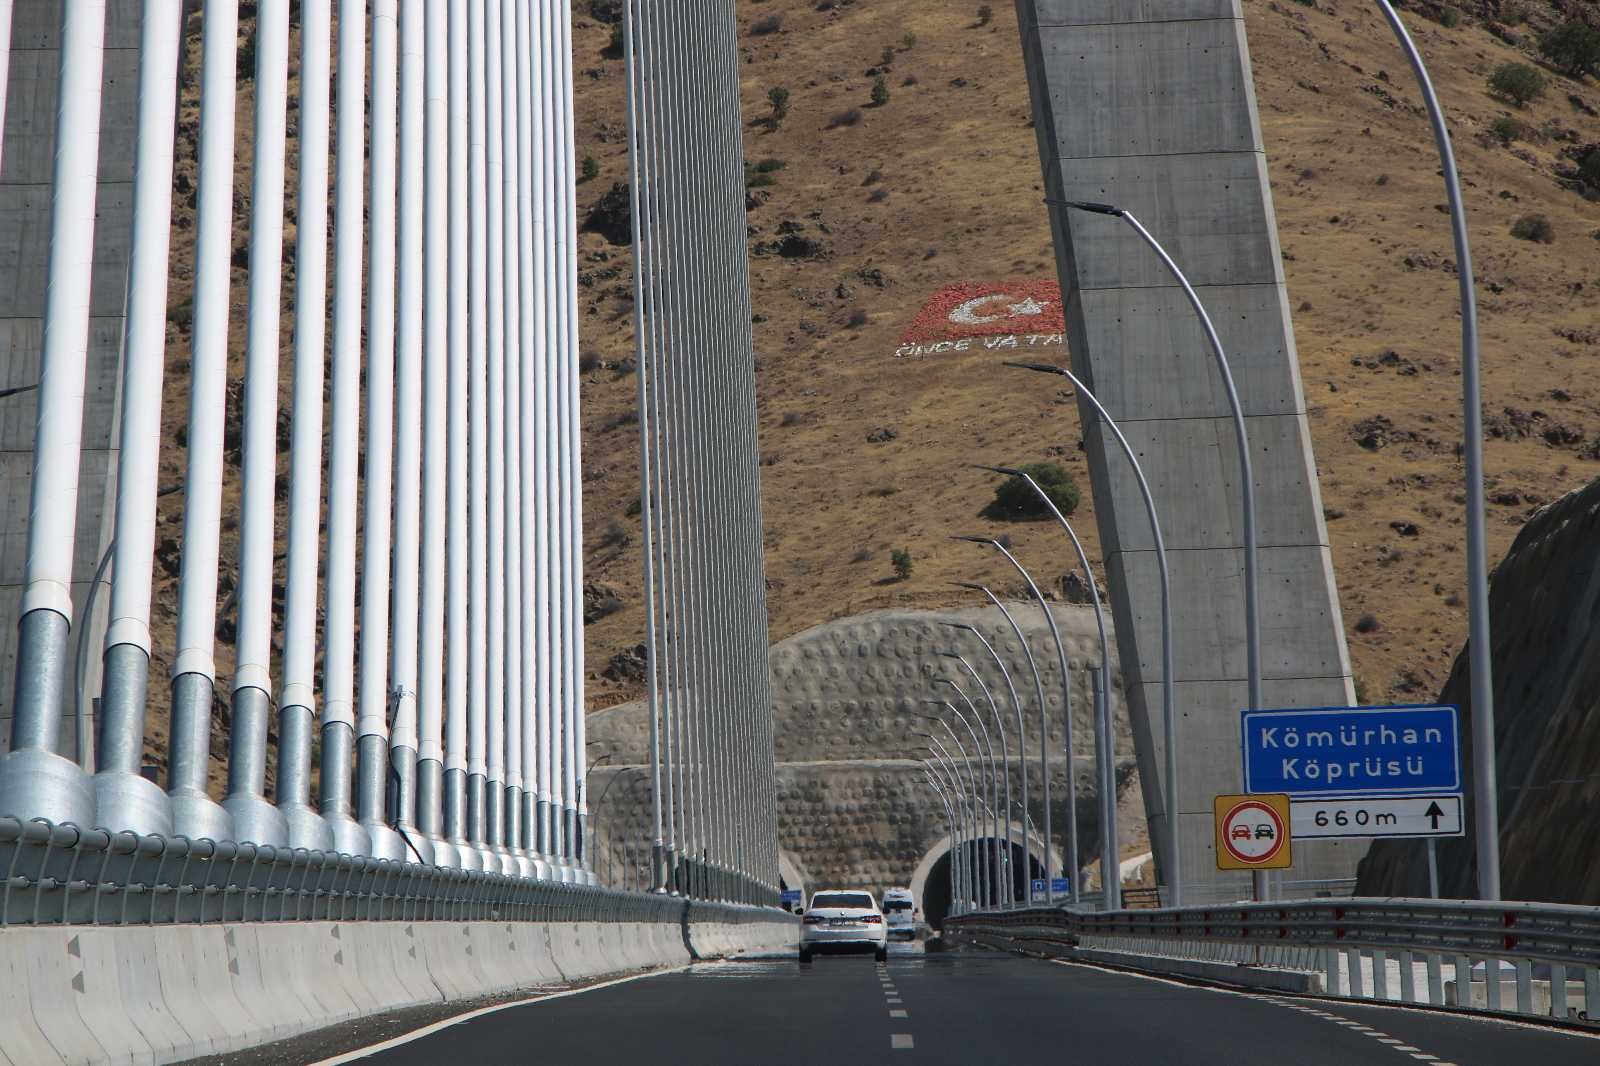 16 şehri birbirine bağlayan Kömürhan Köprüsü sürücülere kolaylık sağlıyor